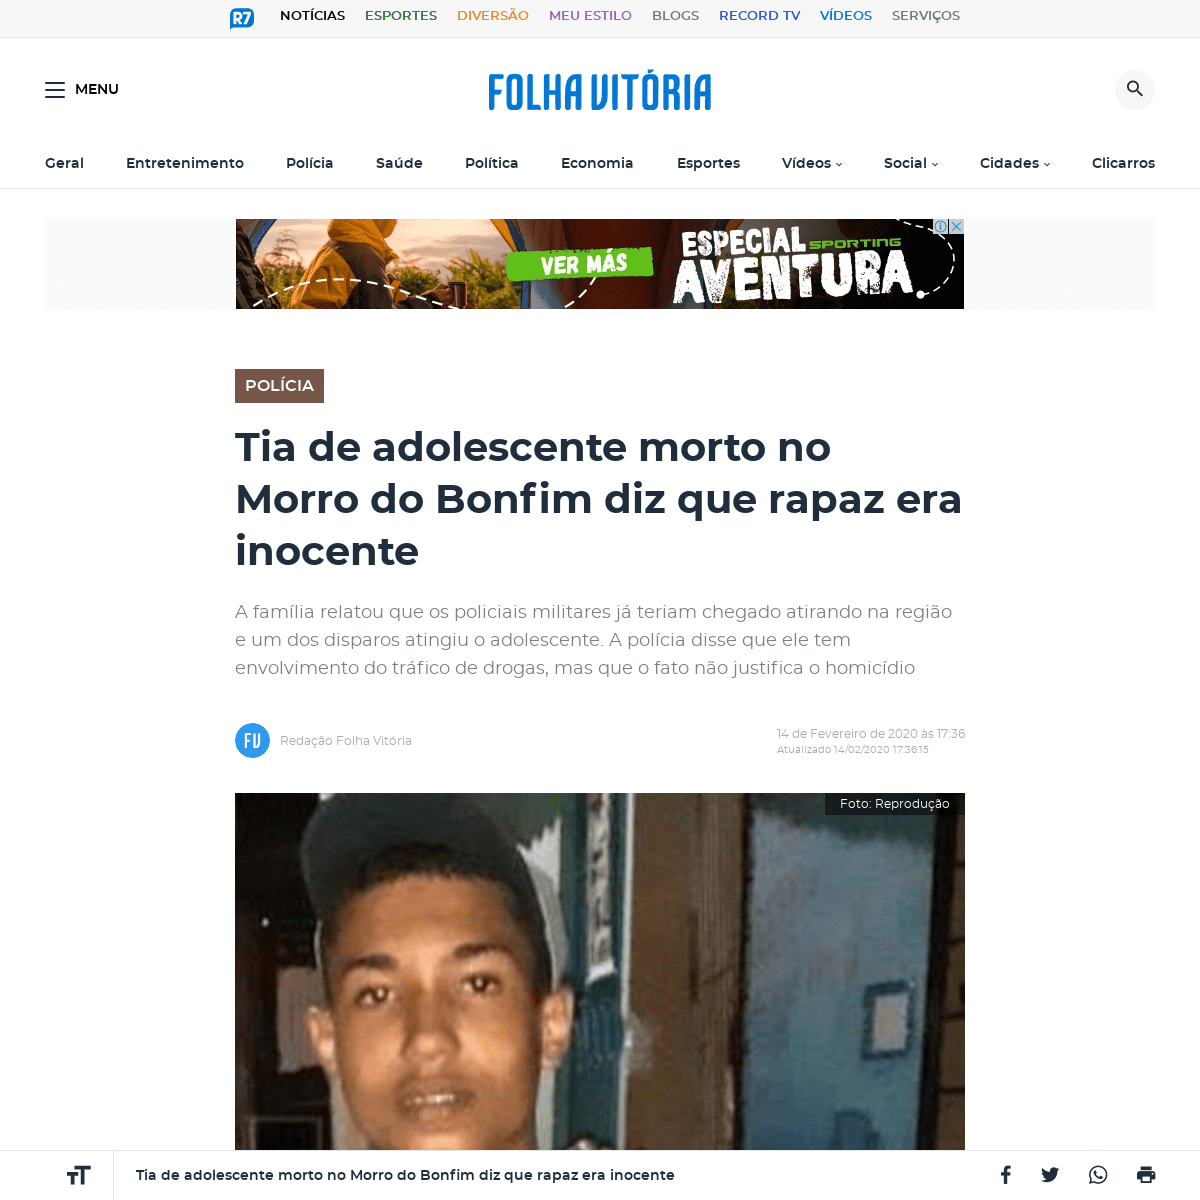 A complete backup of www.folhavitoria.com.br/policia/noticia/02/2020/tia-de-adolescente-morto-no-morro-do-bonfim-diz-que-rapaz-e